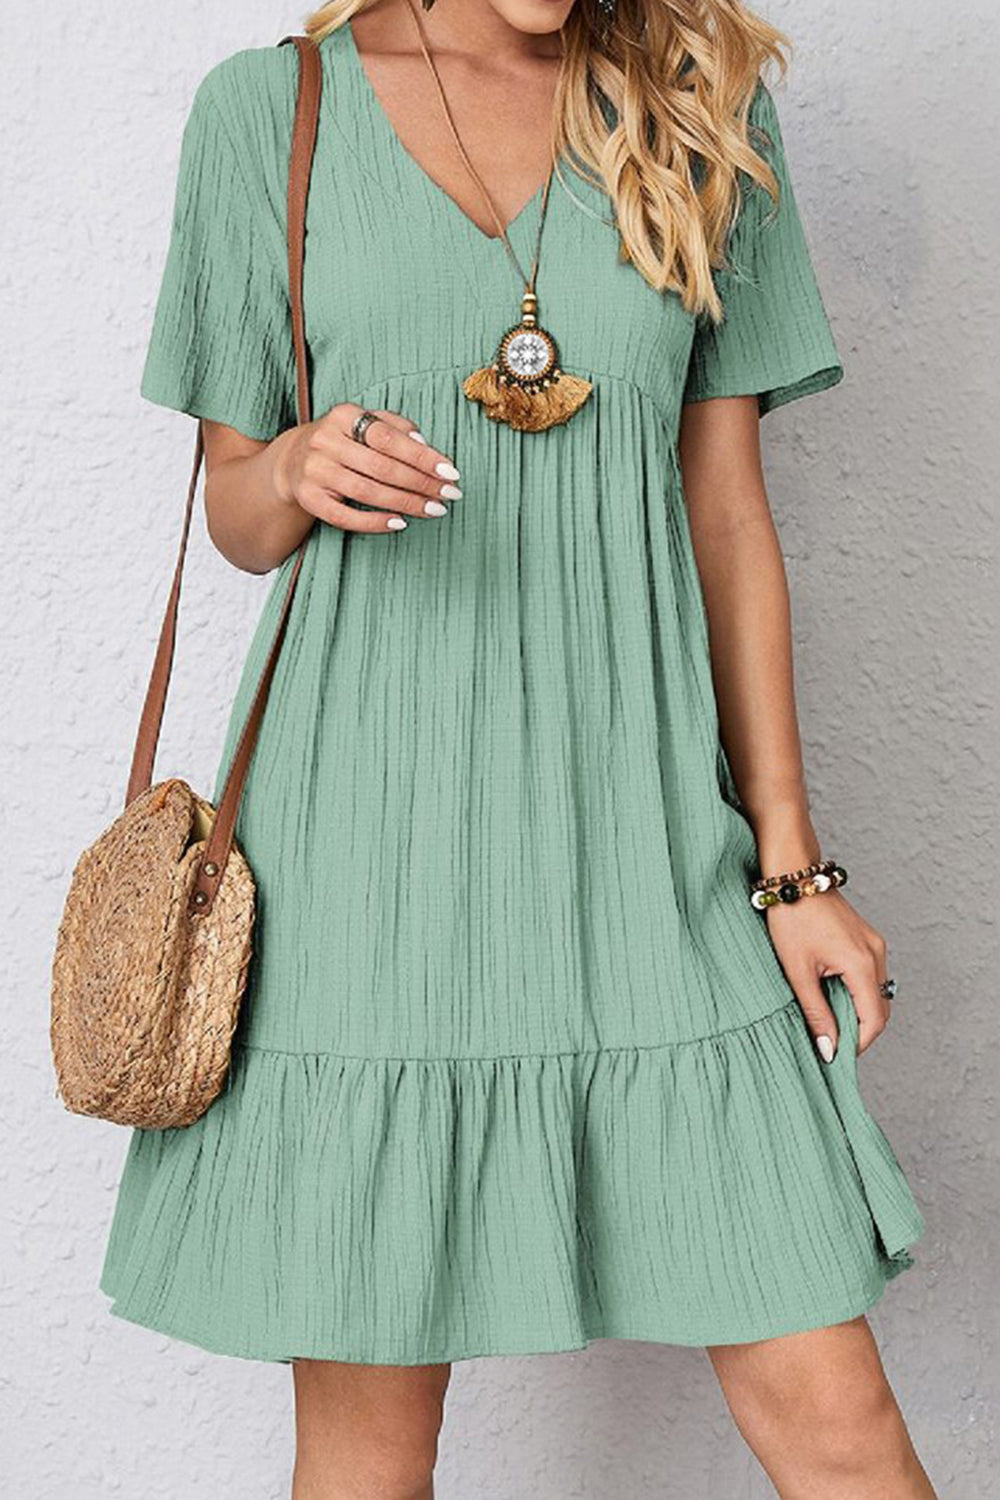 Ruched V-Neck Summer Dress Turquoise